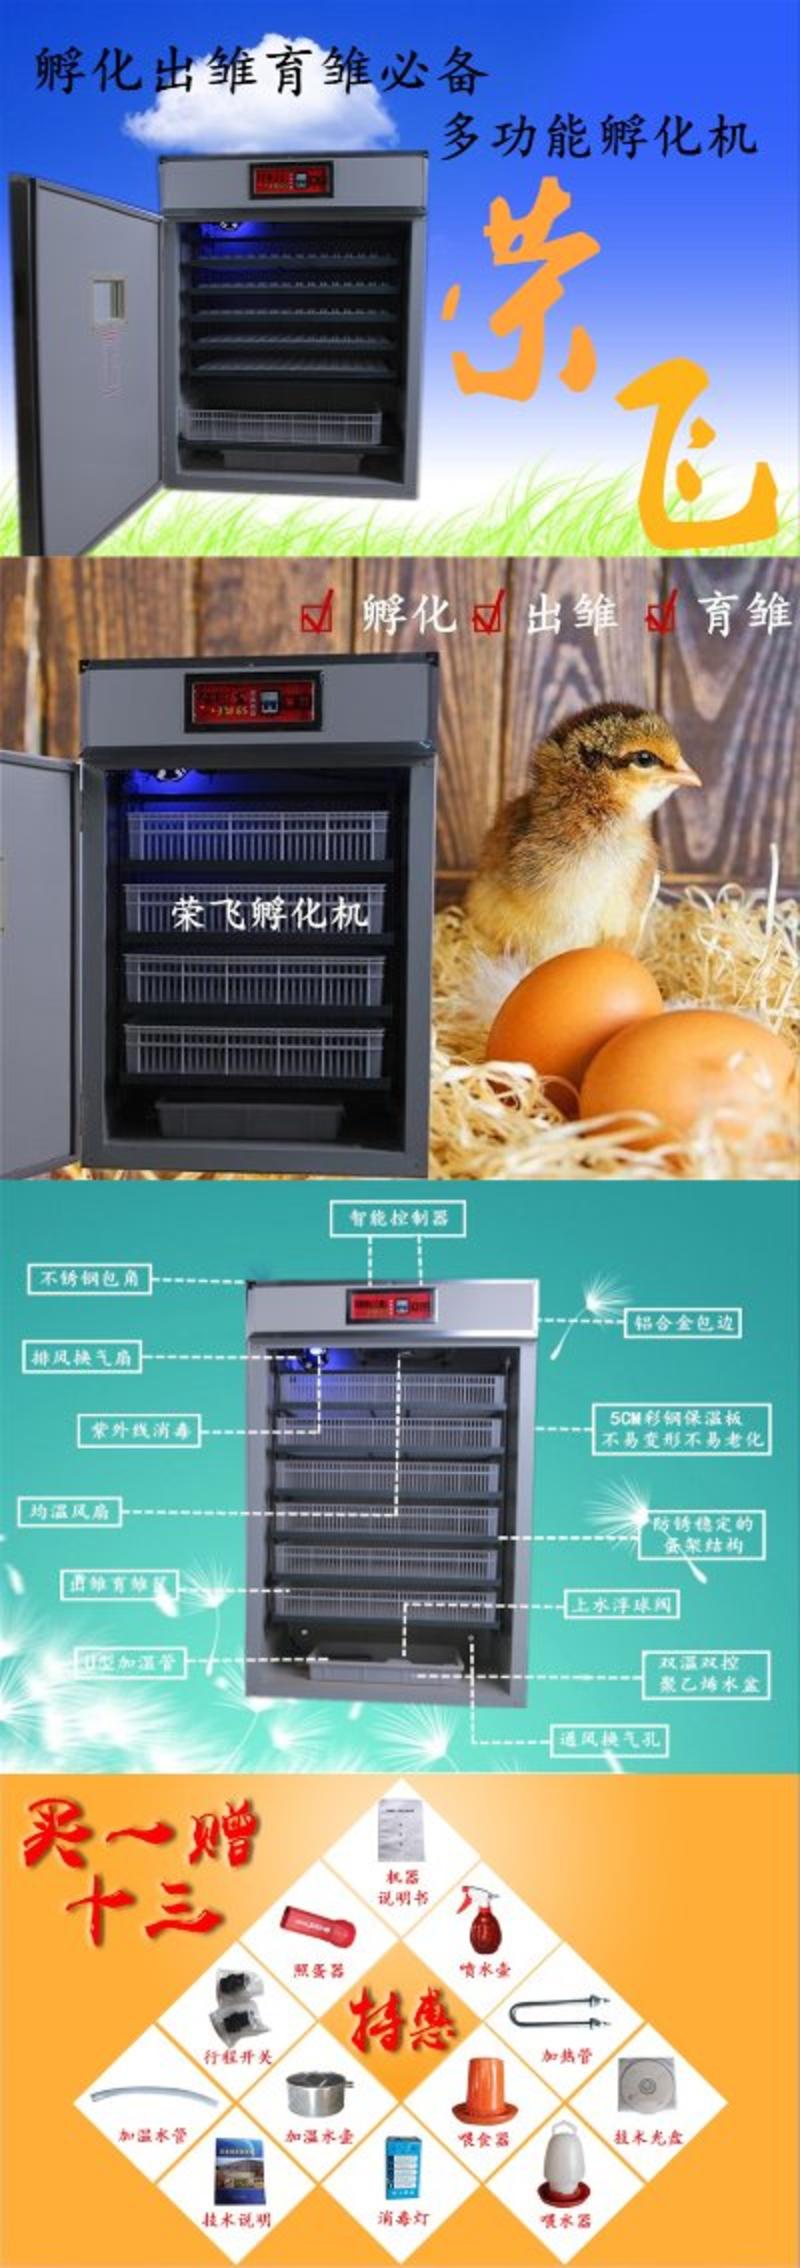 孵化机孵化箱264枚智能全自动孵化机家用小型孵化器